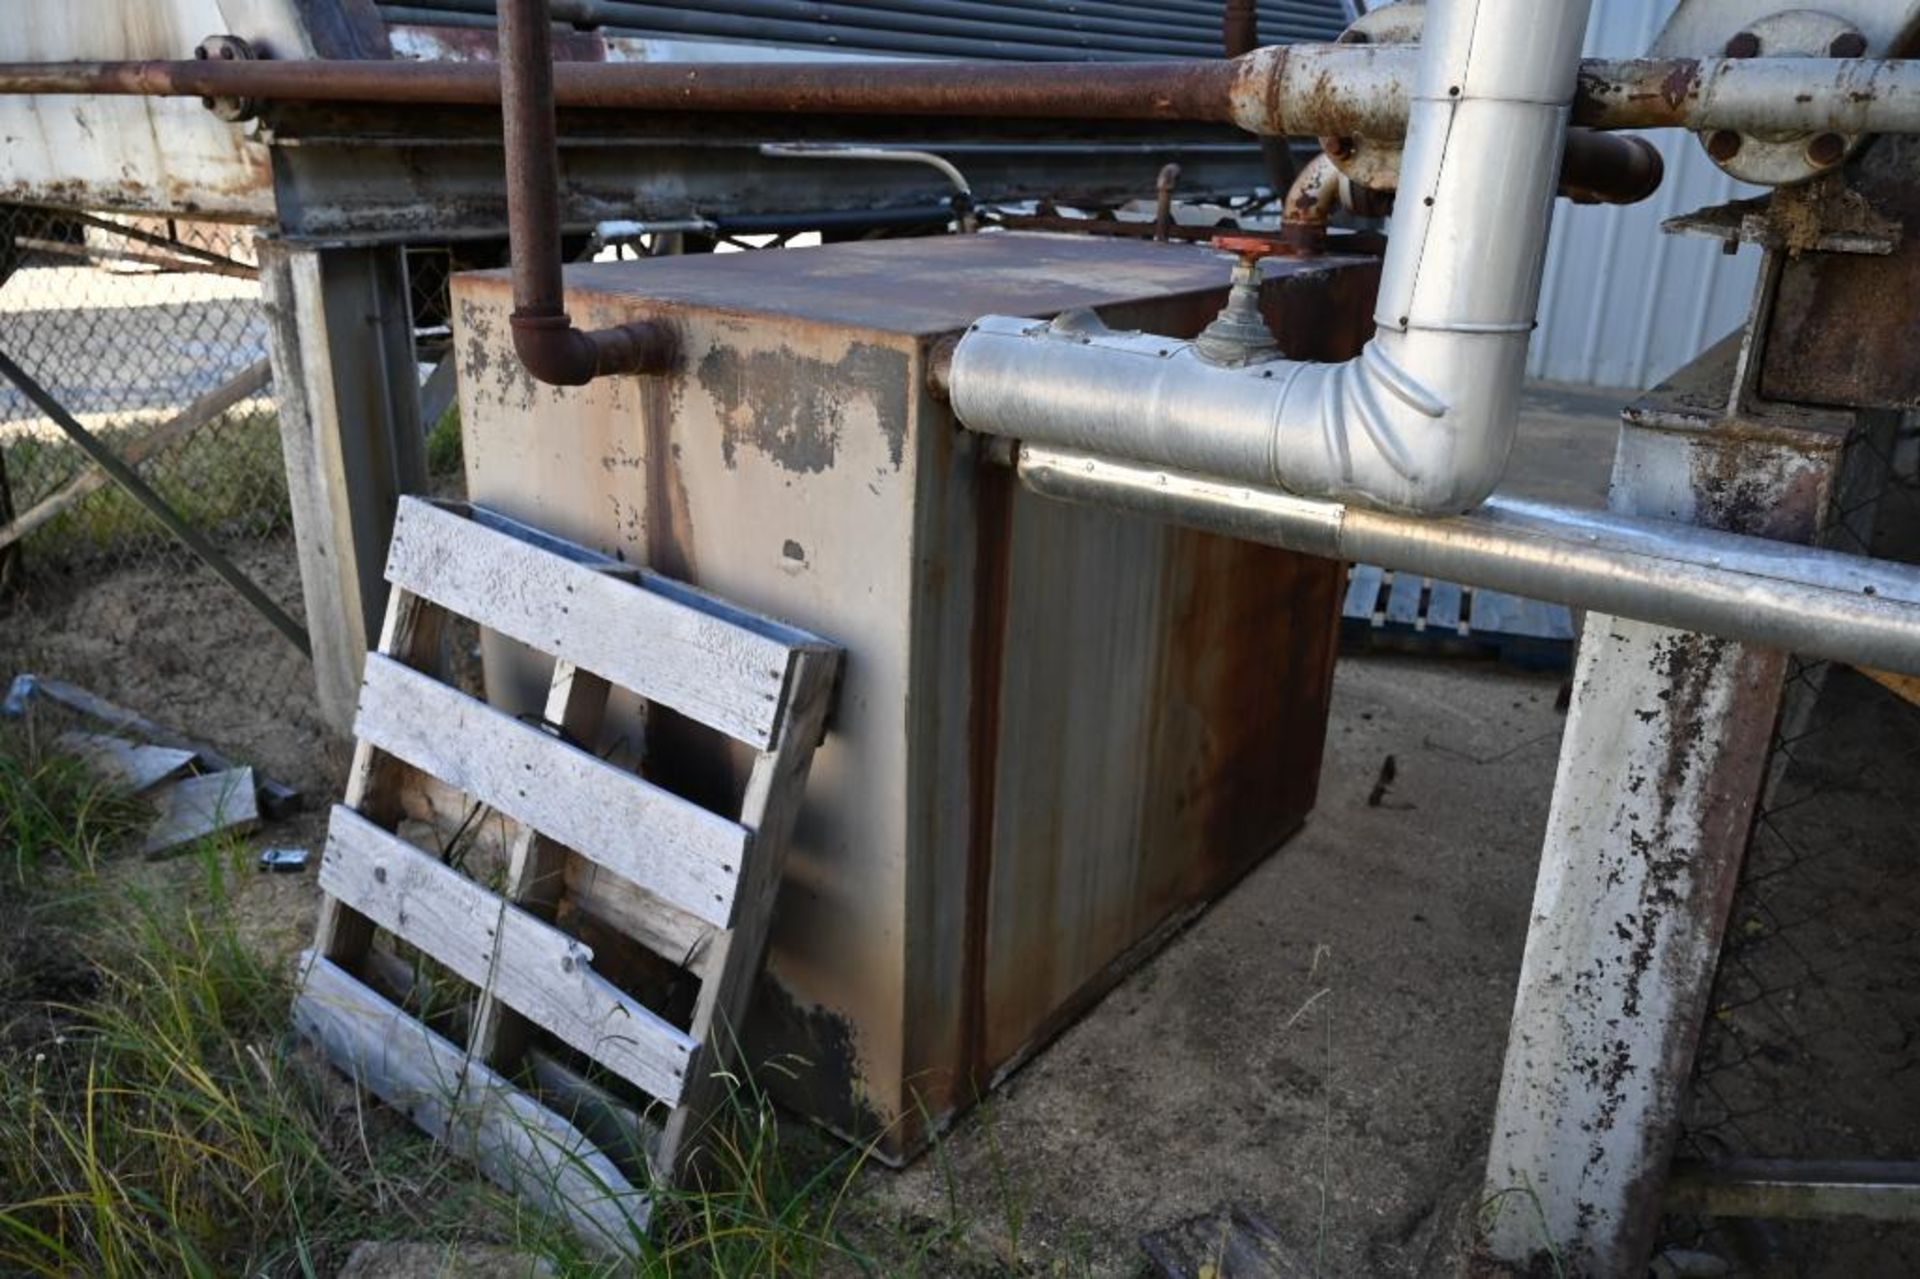 1996 Hurst Boiler System - Image 253 of 271